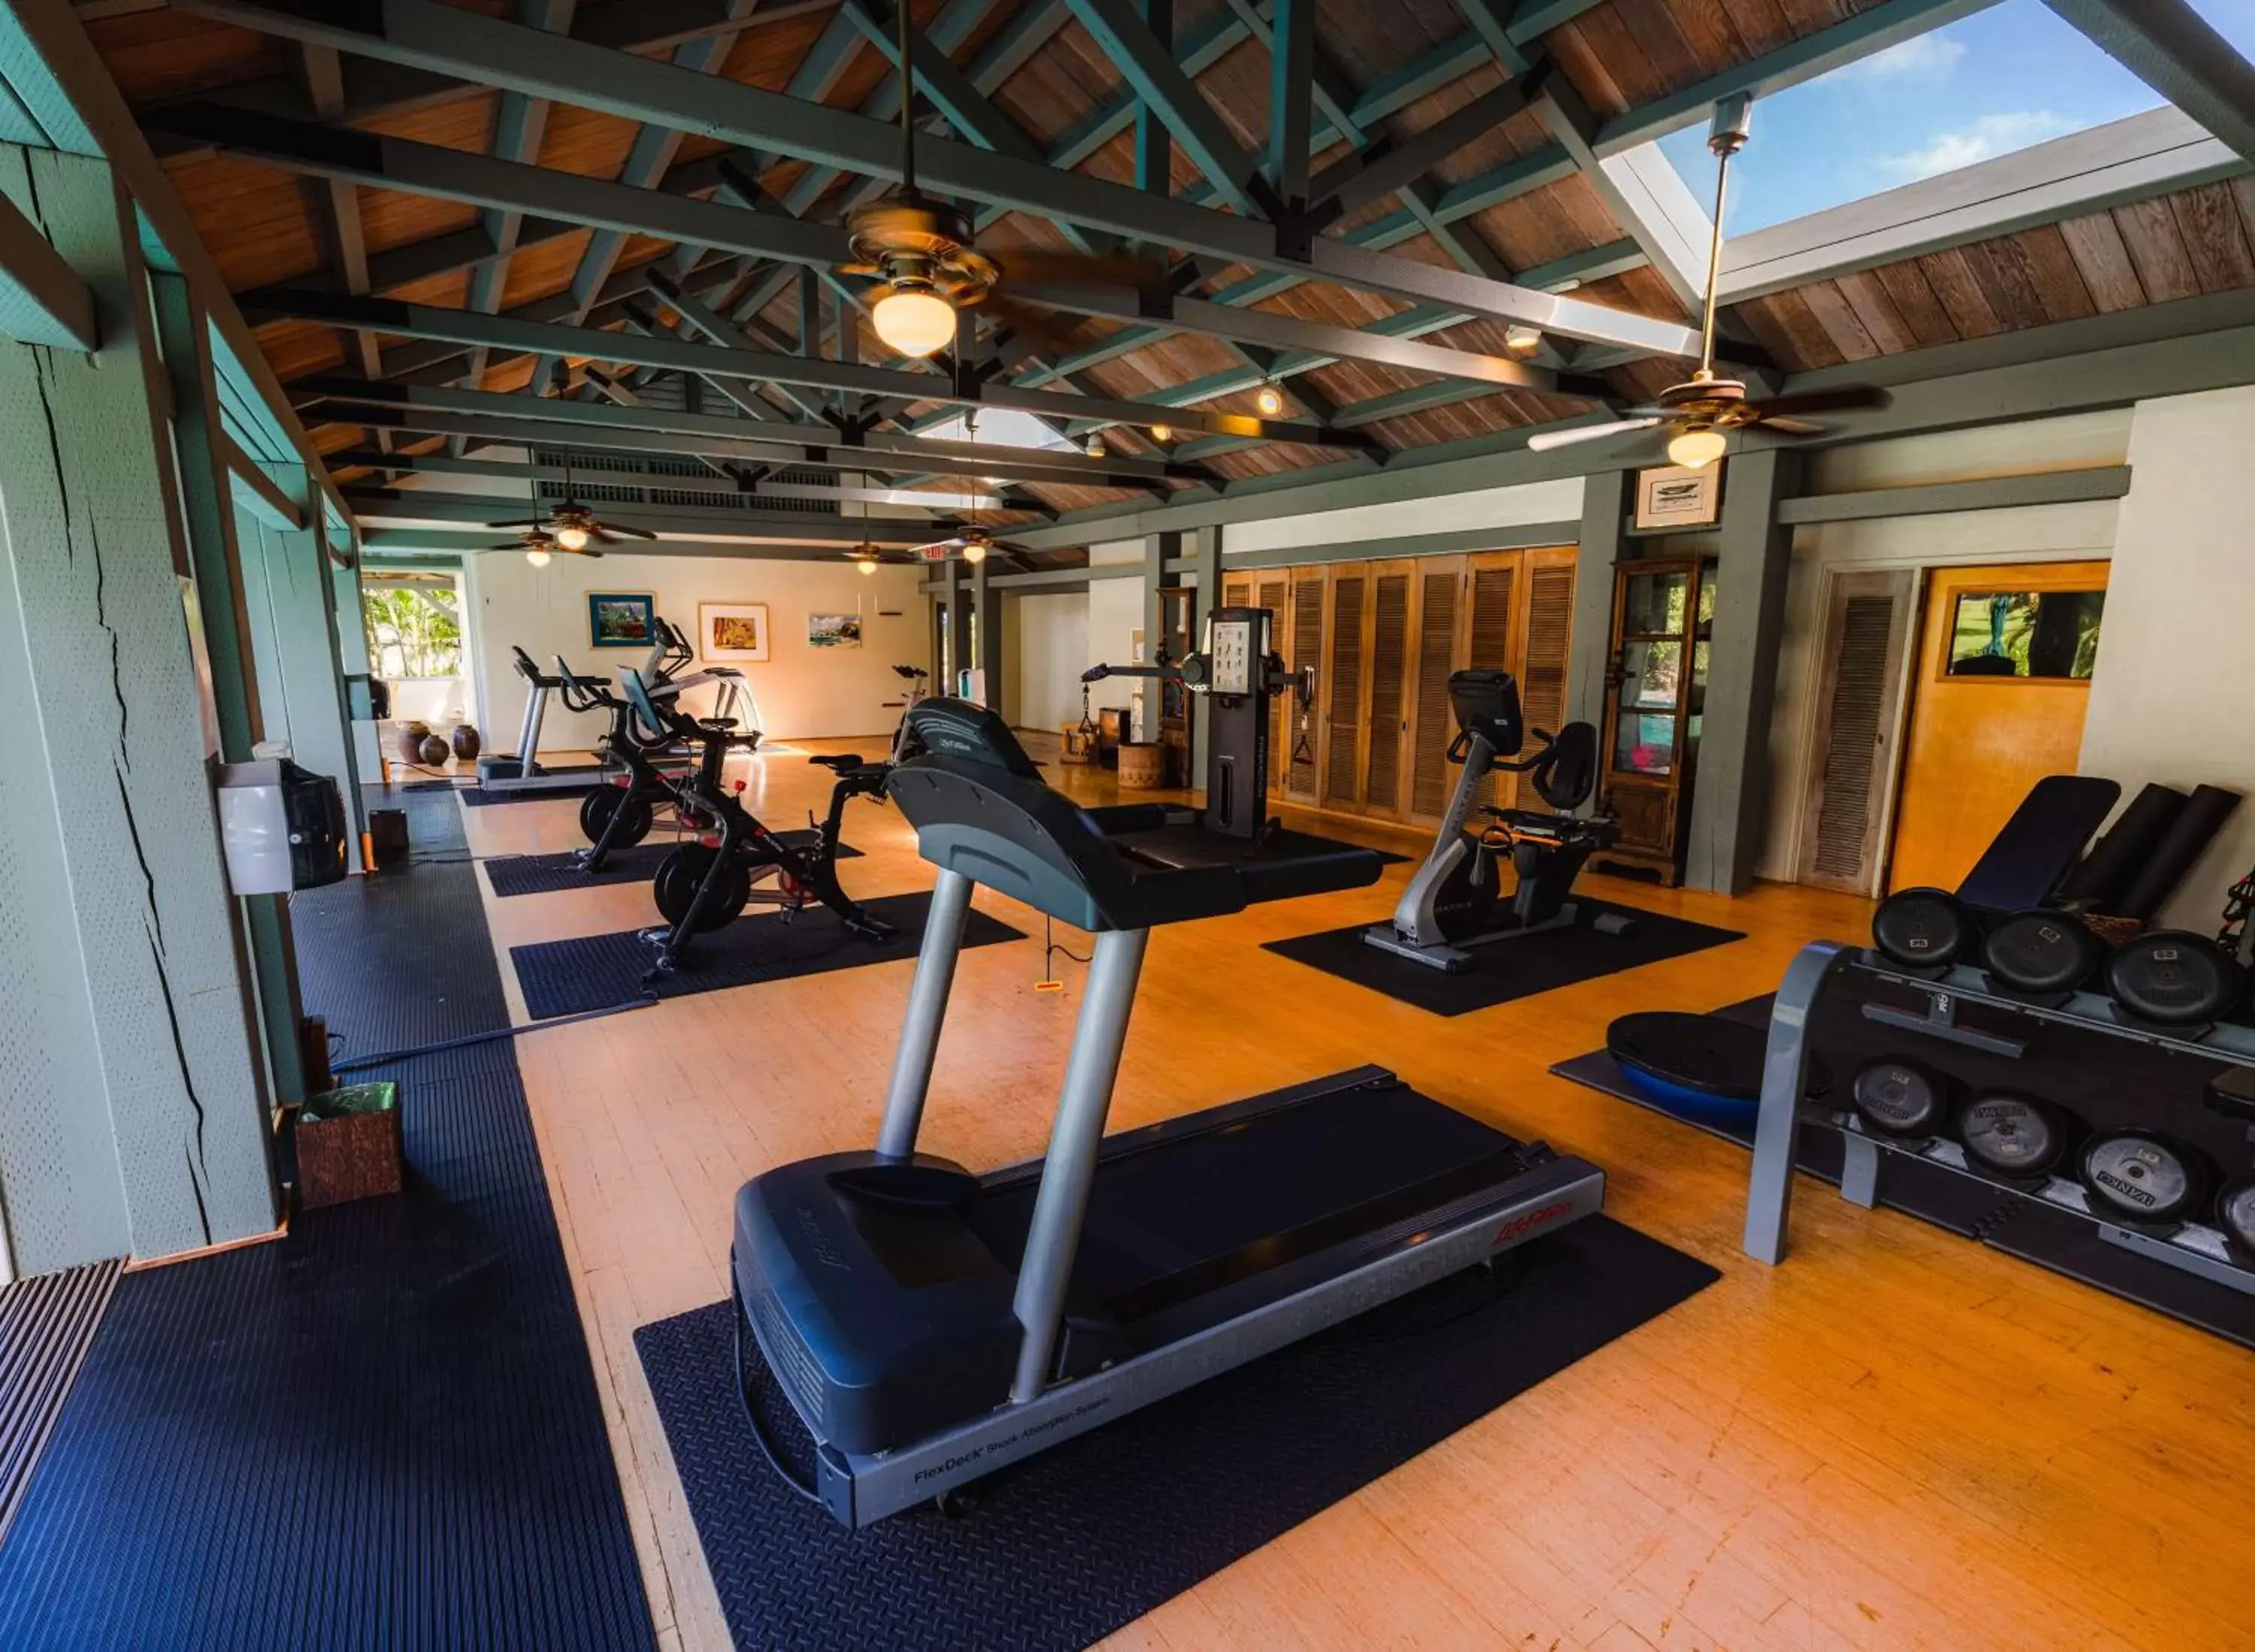 Fitness centre/facilities, Fitness Center/Facilities in Hana-Maui Resort, a Destination by Hyatt Residence